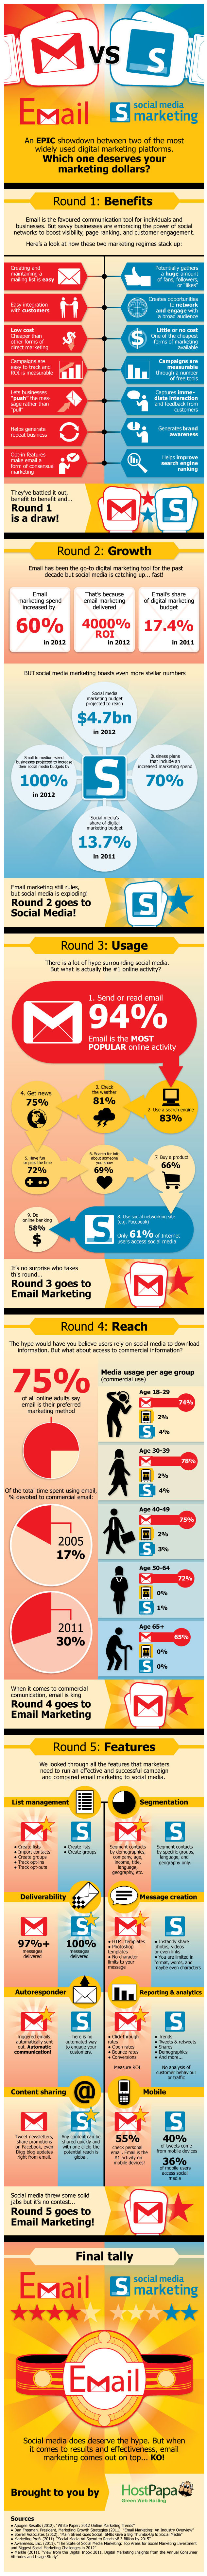  Email vs. Social media